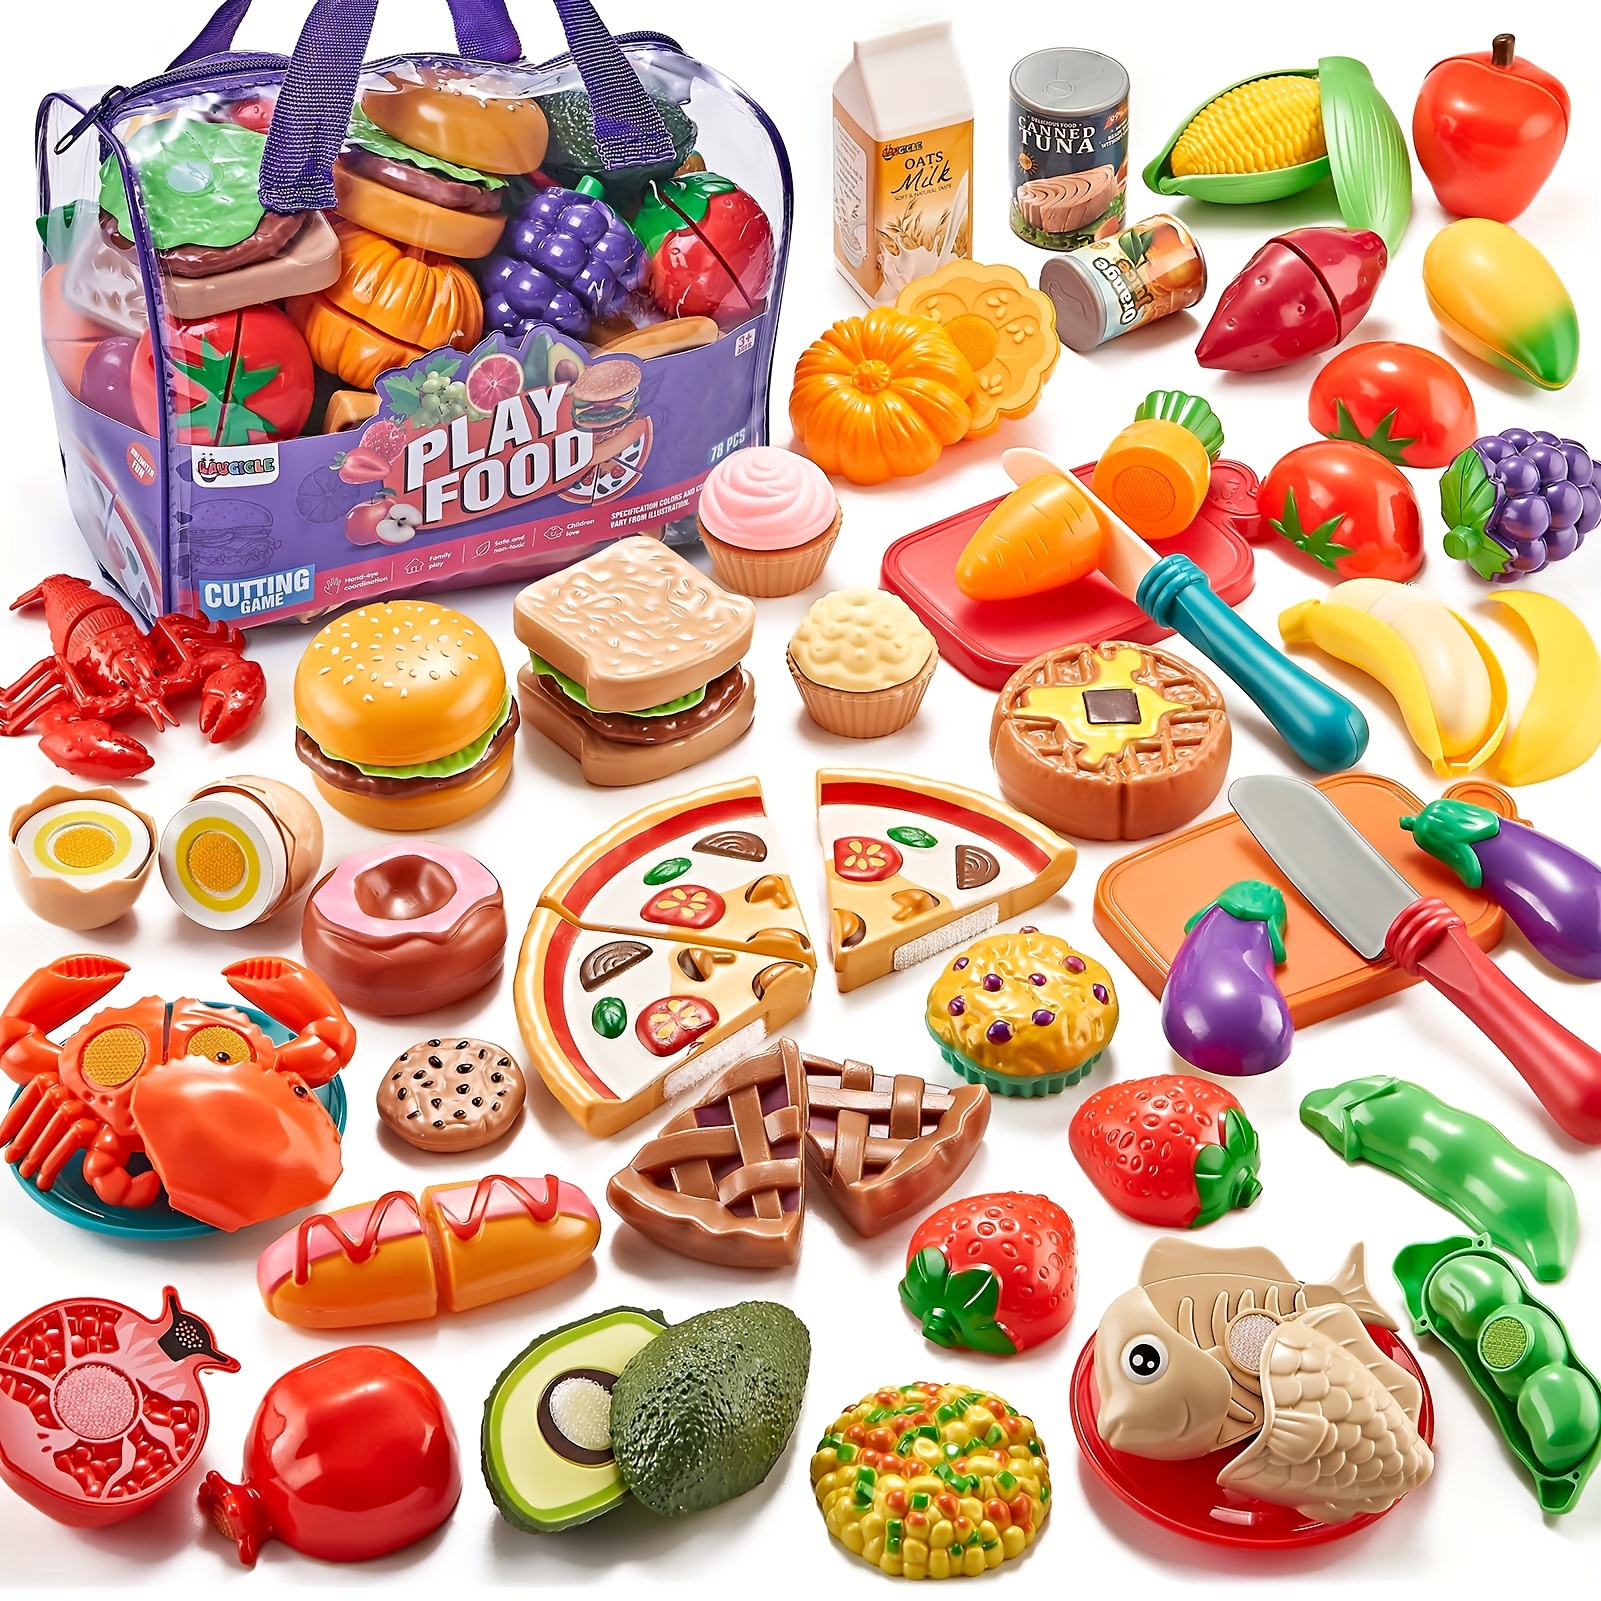 Foregive legemad til børne køkken - 78 stk. skære legetøj mad med legetøj med grøntsager, frugter, med pizza legetøj, foregive mad, lege køkken tilbehør, drenge piger ...